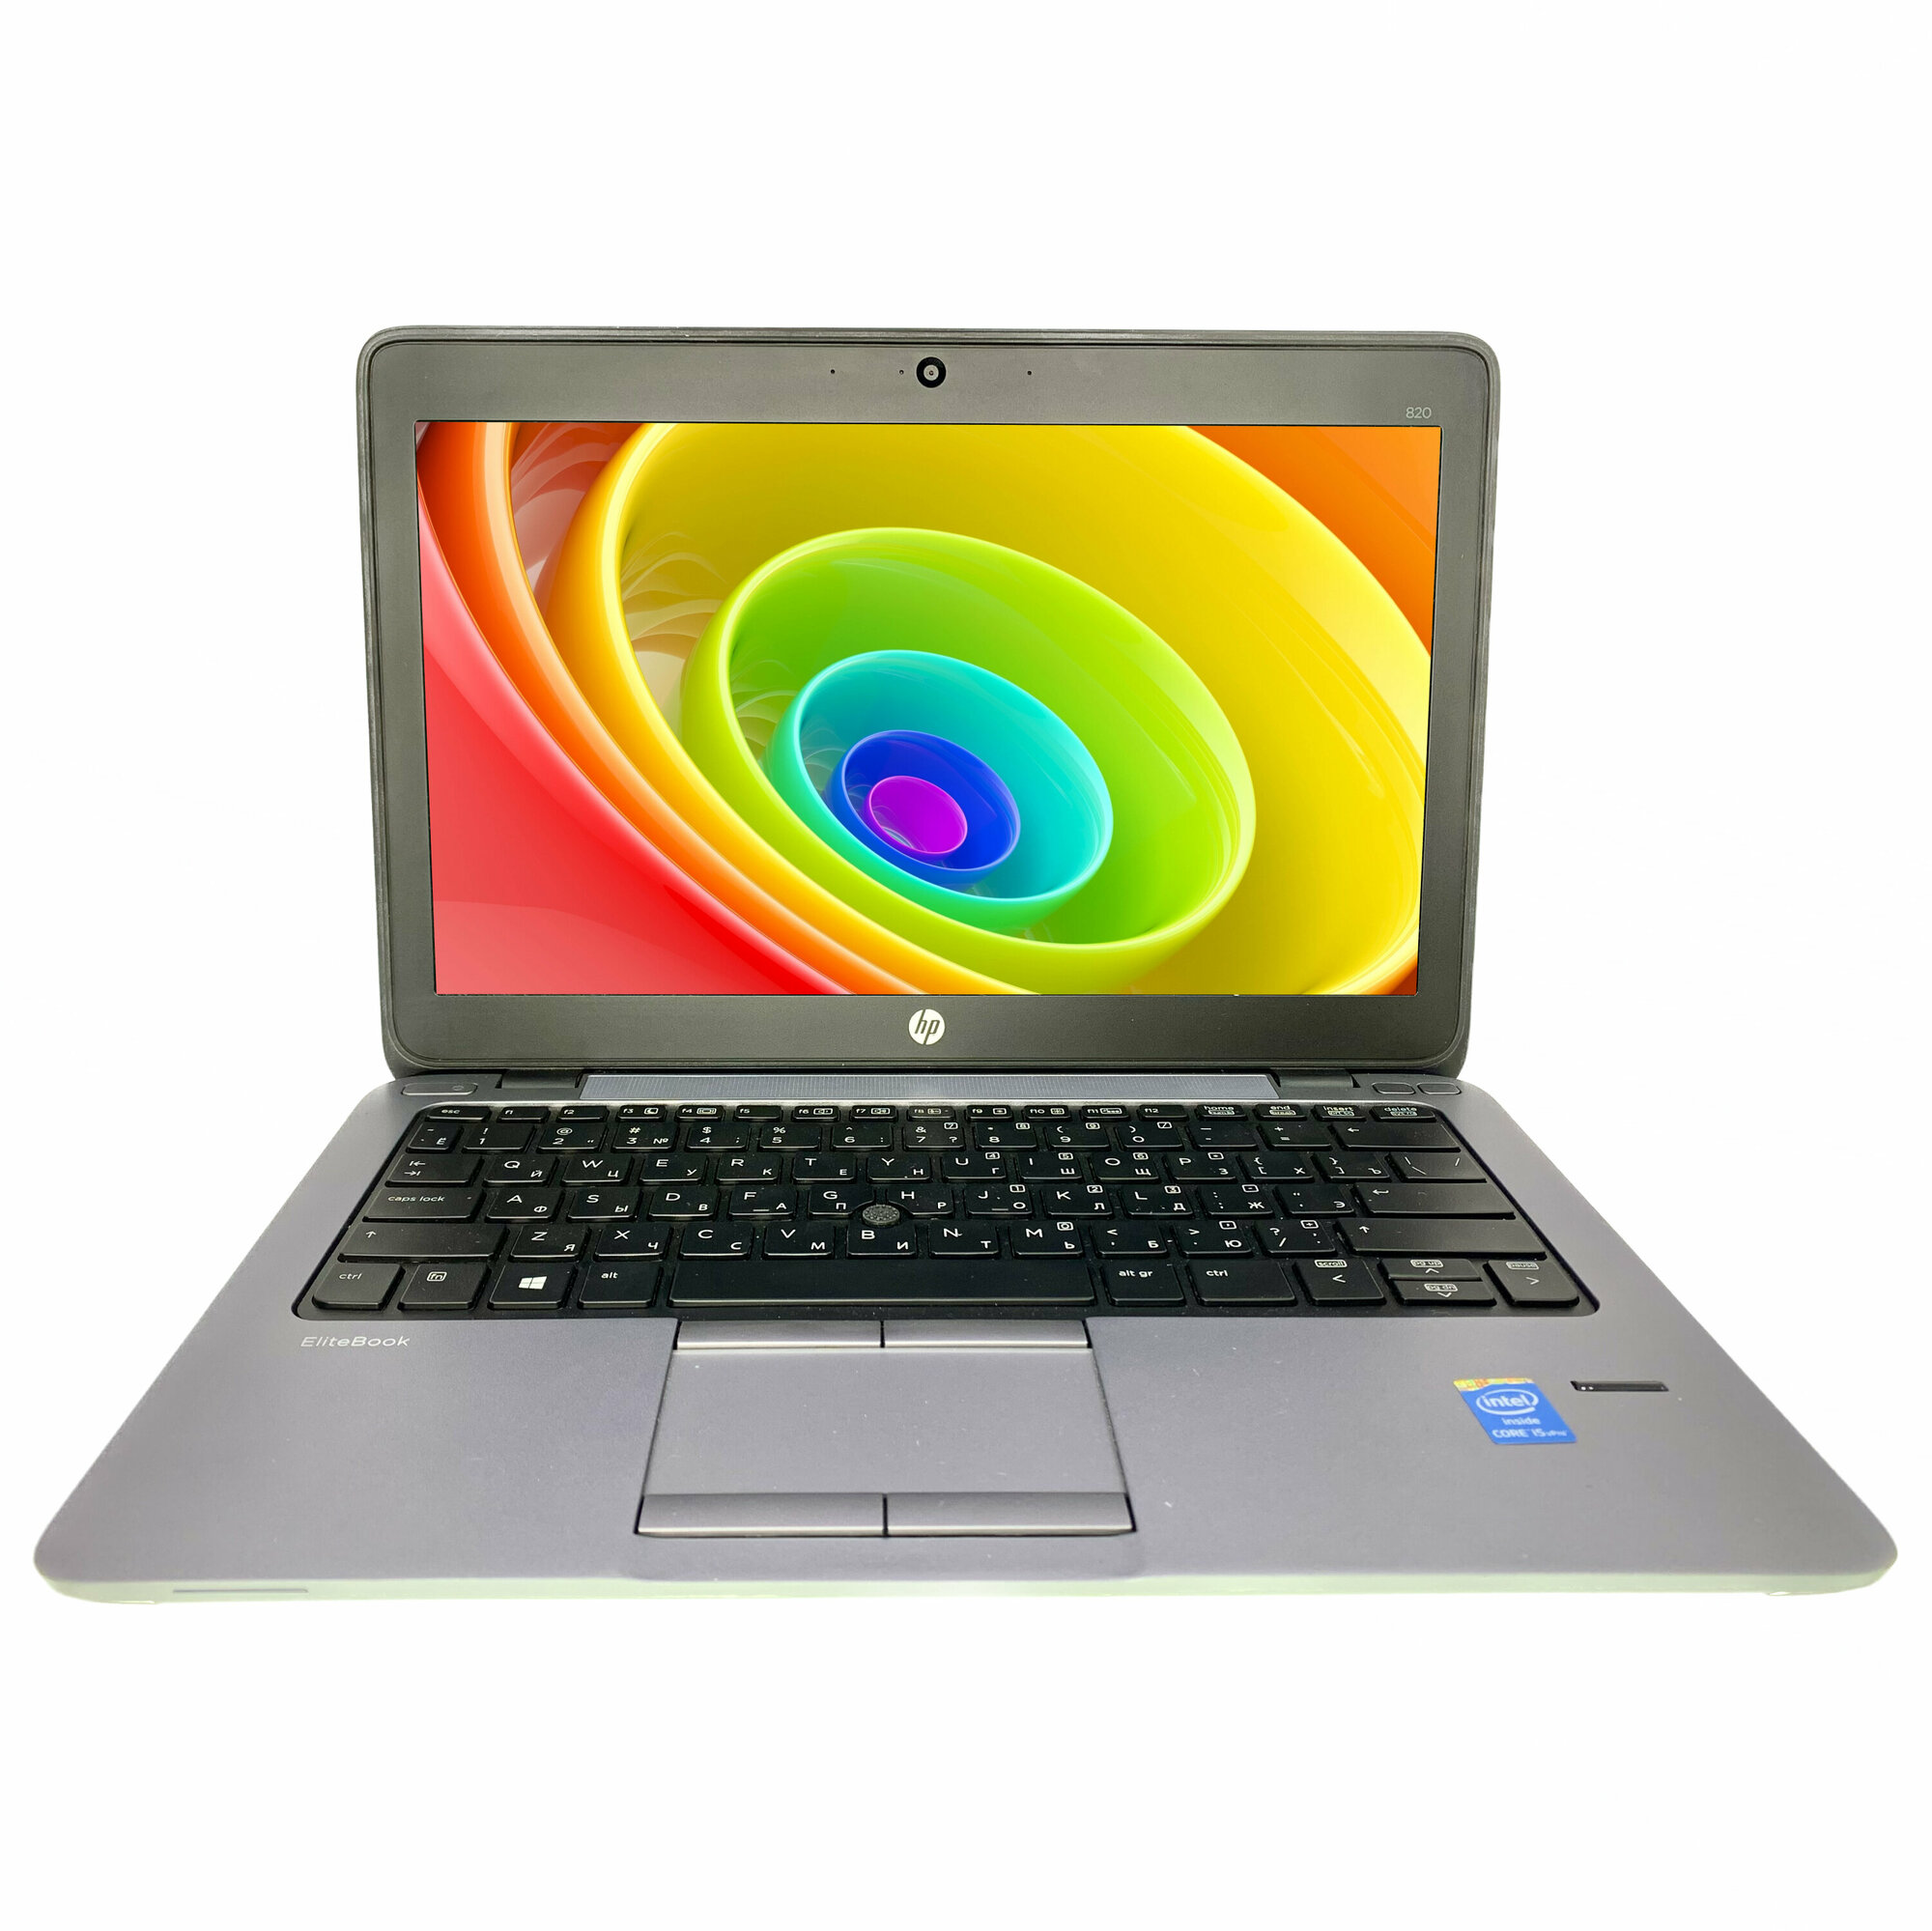 12.5" Ноутбук HP EliteBook 820 G1 1366x768, Intel Core i5-4300U, RAM 8 ГБ, SSD 120 ГБ, Intel HD Graphics 4400, Windows 10 Home